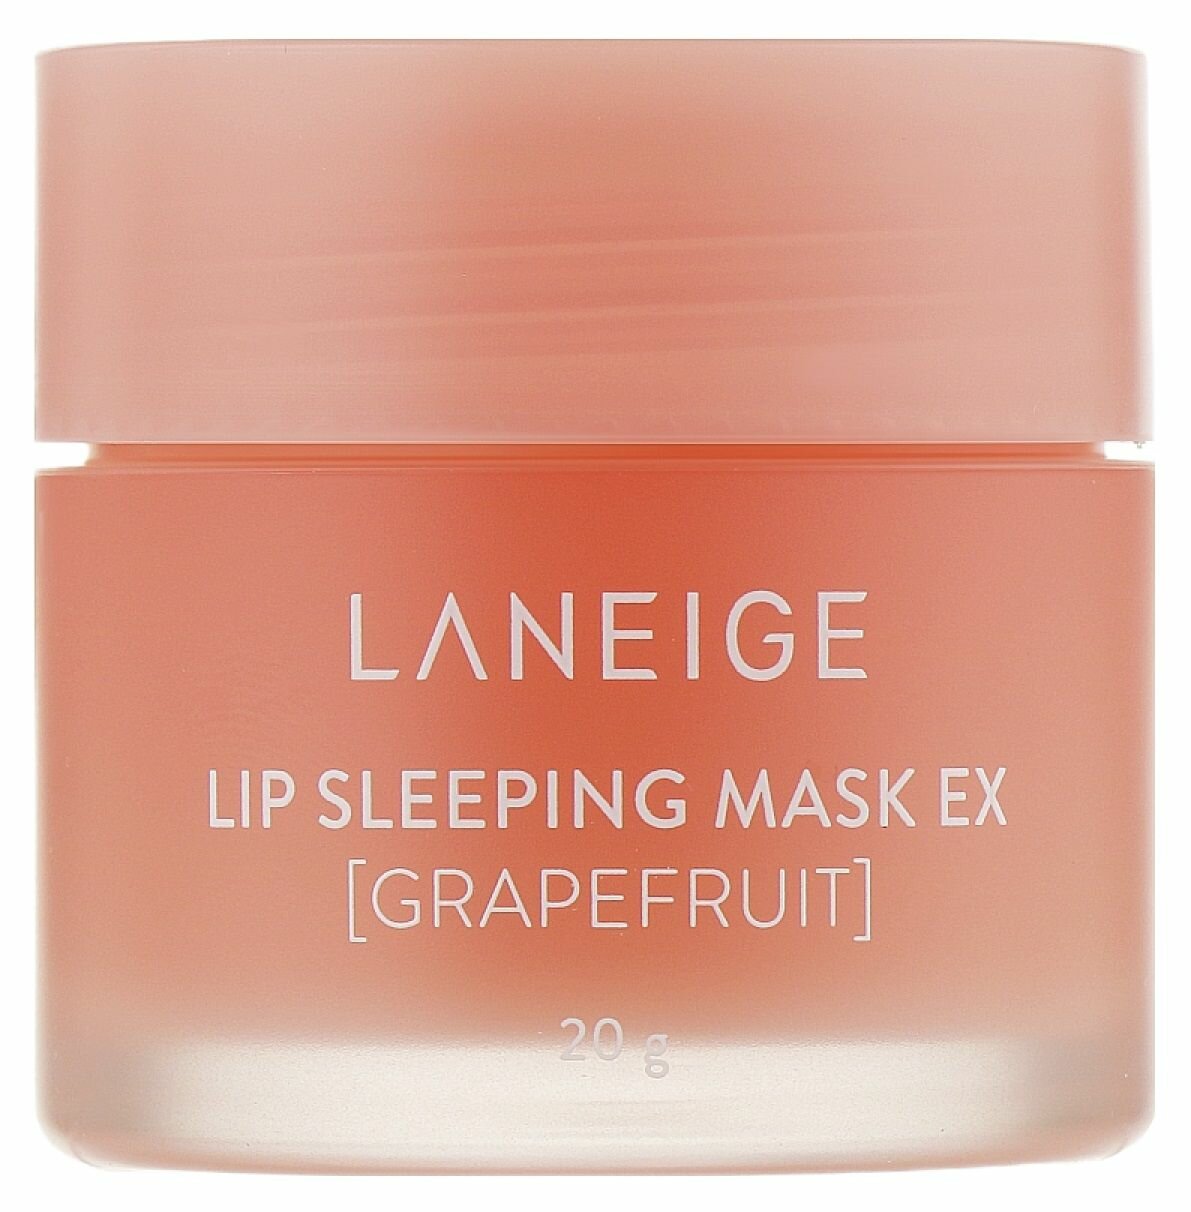 LANEIGE Маска для губ с экстрактом грейпфрута LANEIGE LIP SLEEPING MASK EX/GRAPEFRUIT/, 20гр